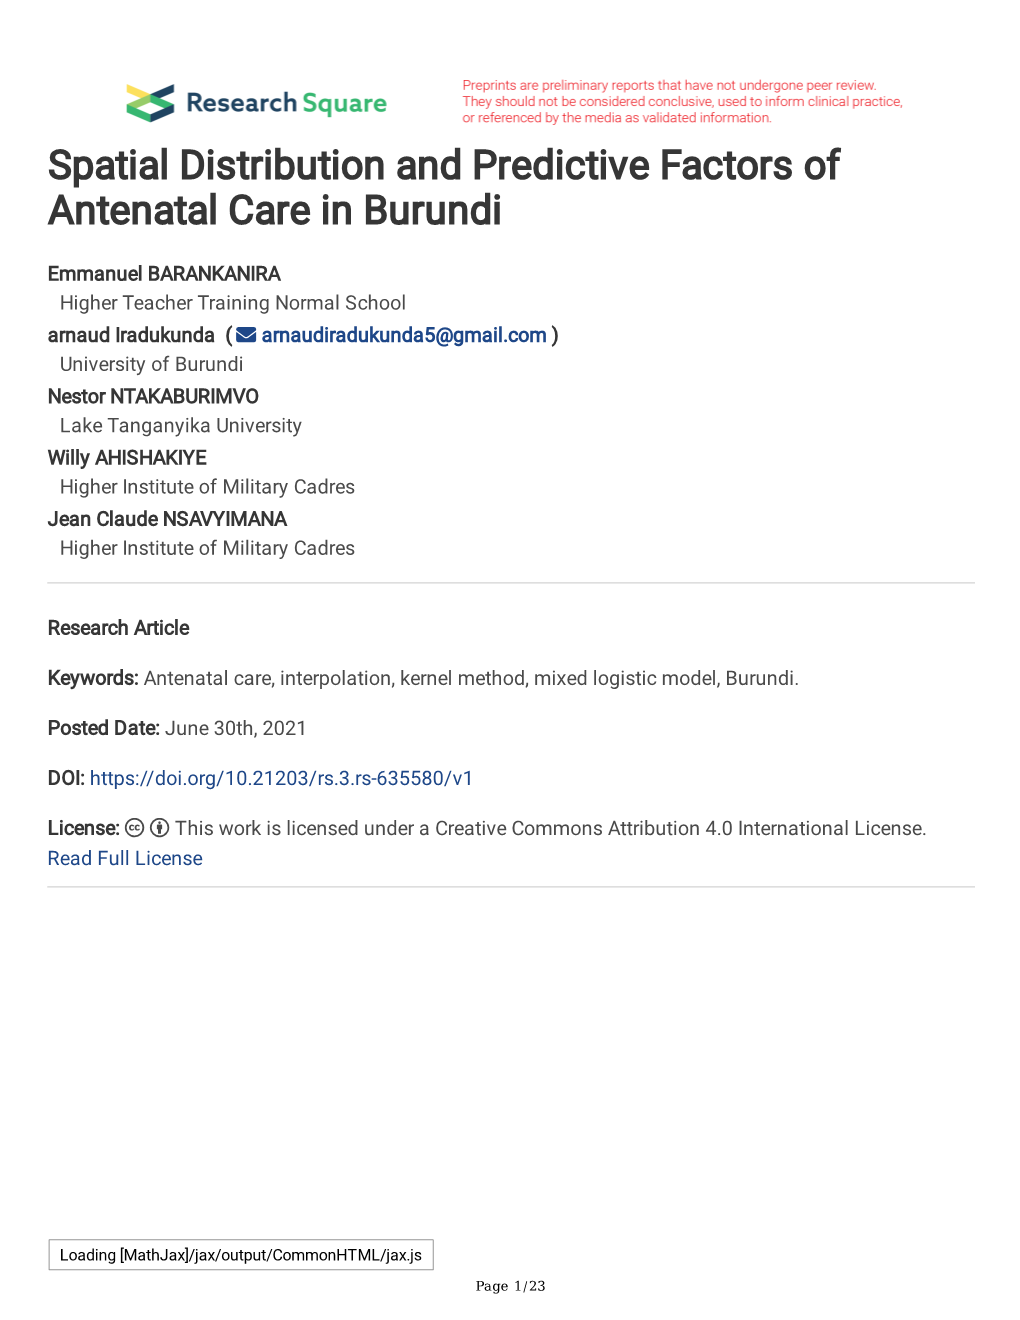 Spatial Distribution and Predictive Factors of Antenatal Care in Burundi